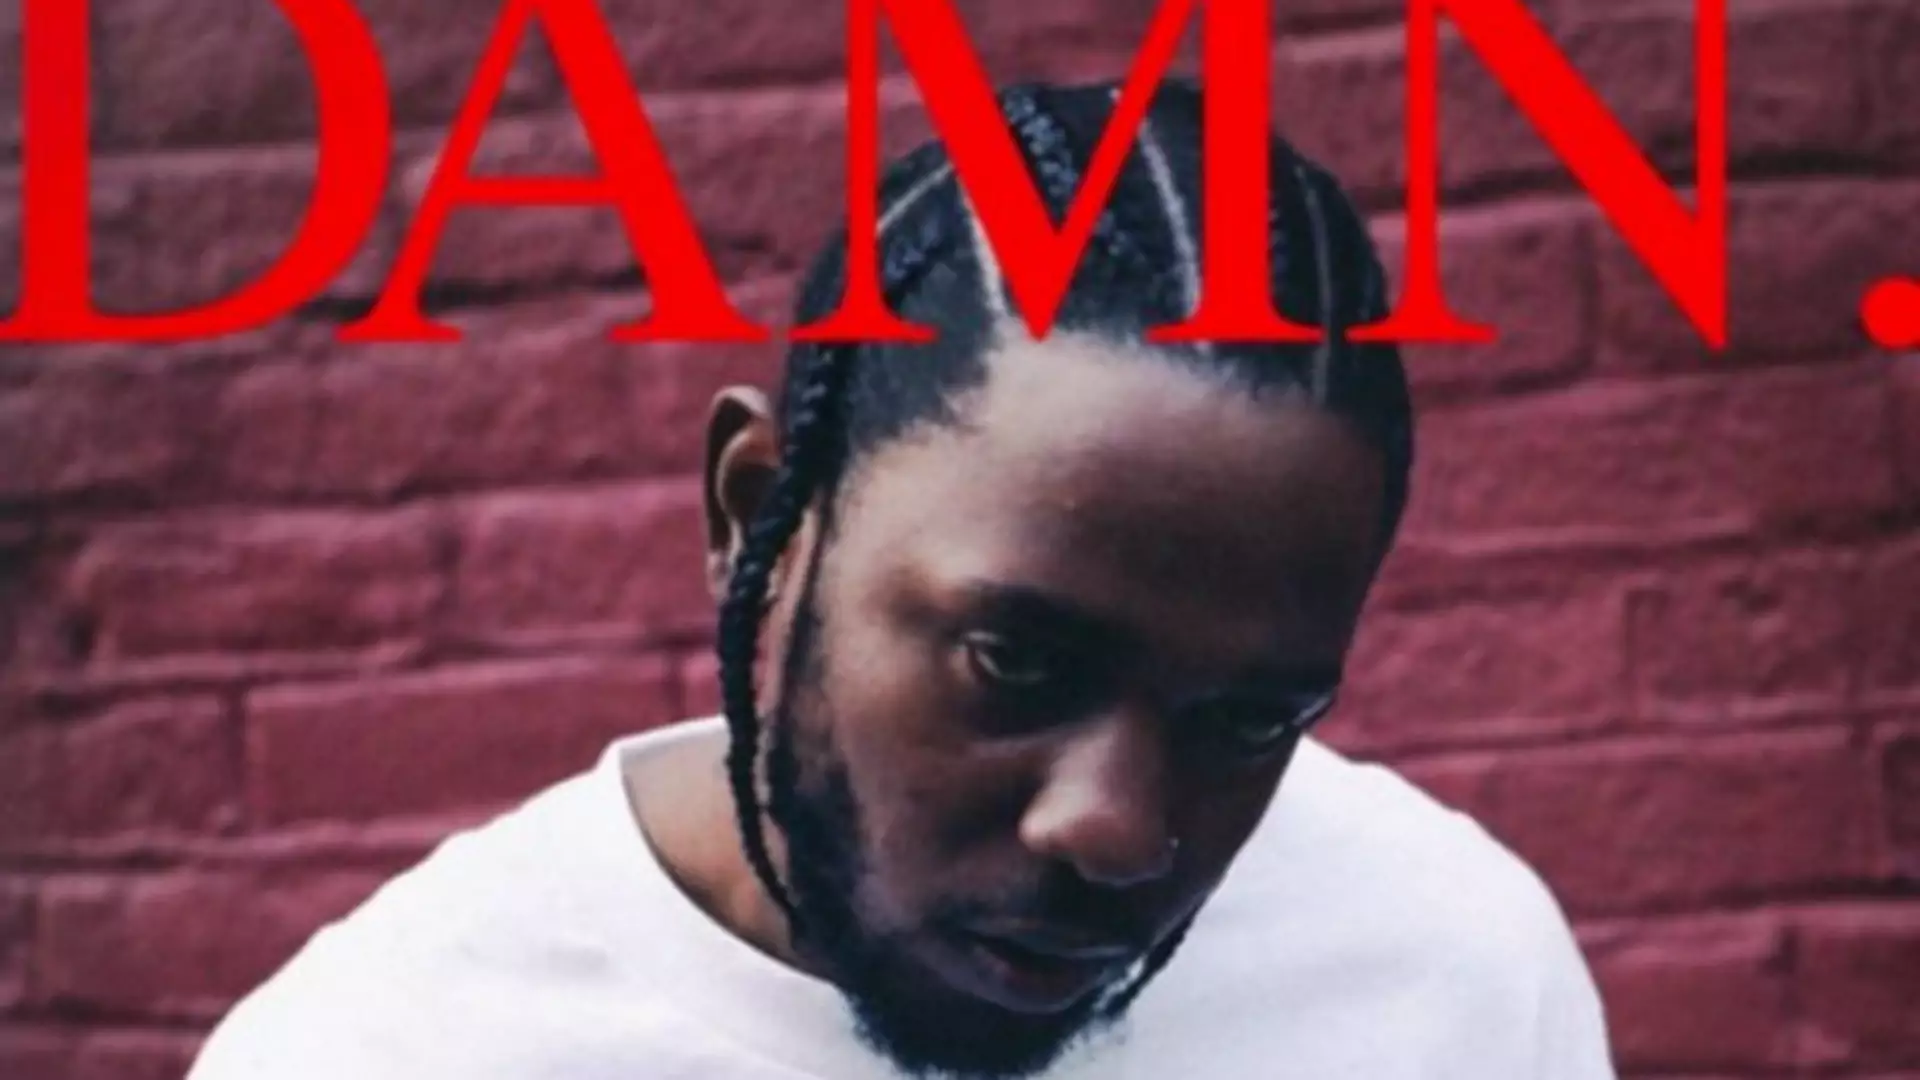 Nike pokazało nowe buty inspirowane płytą "DAMN." Kendricka Lamara